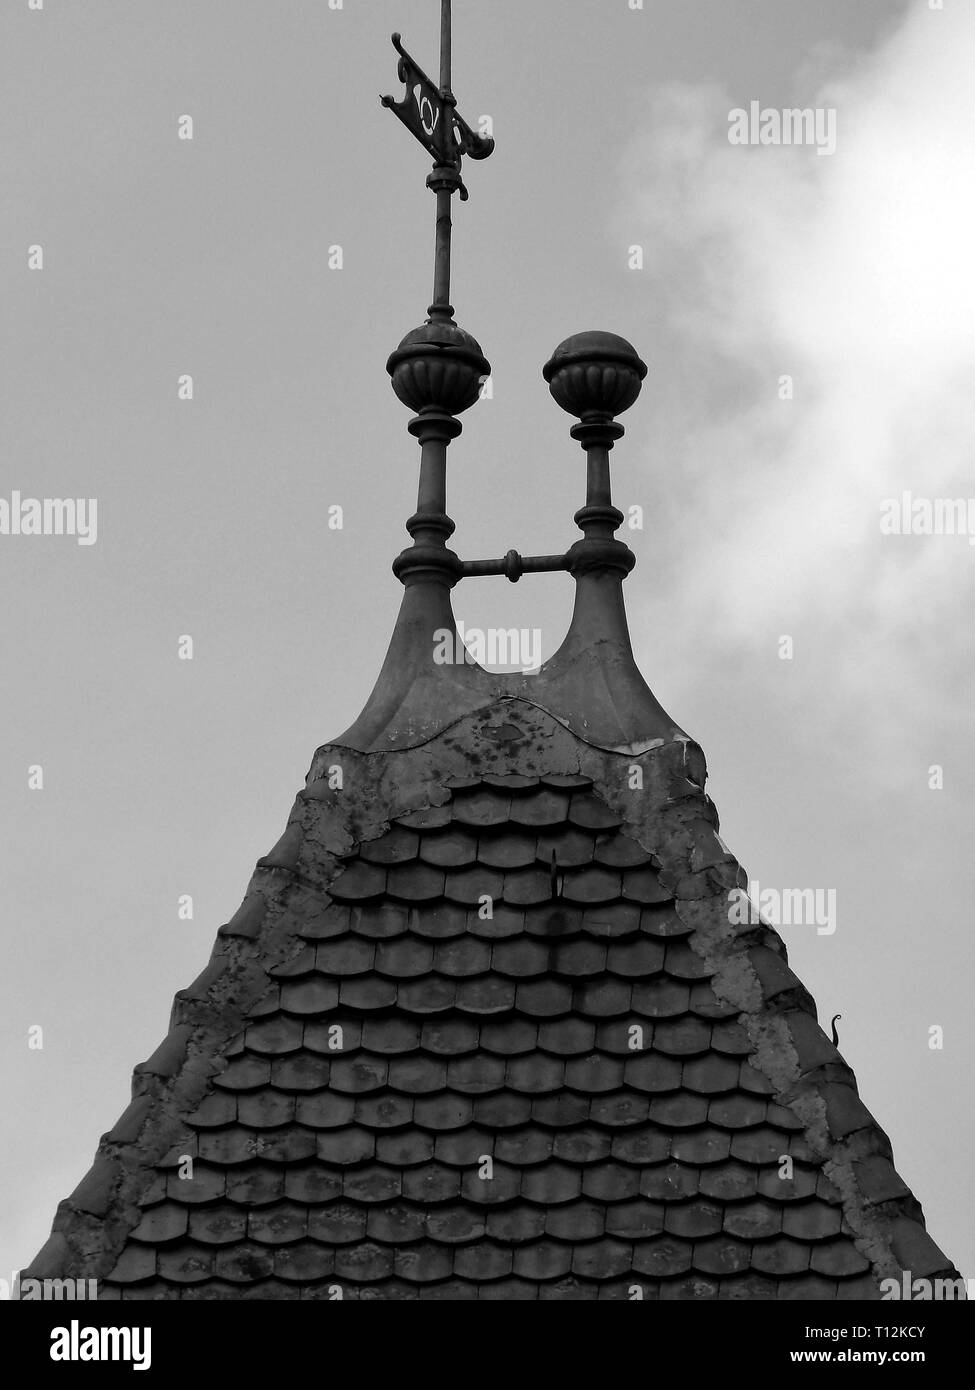 Stützpfeiler Turm einer alten Villa mit Dachziegel in Schwarz und Weiß Stockfoto